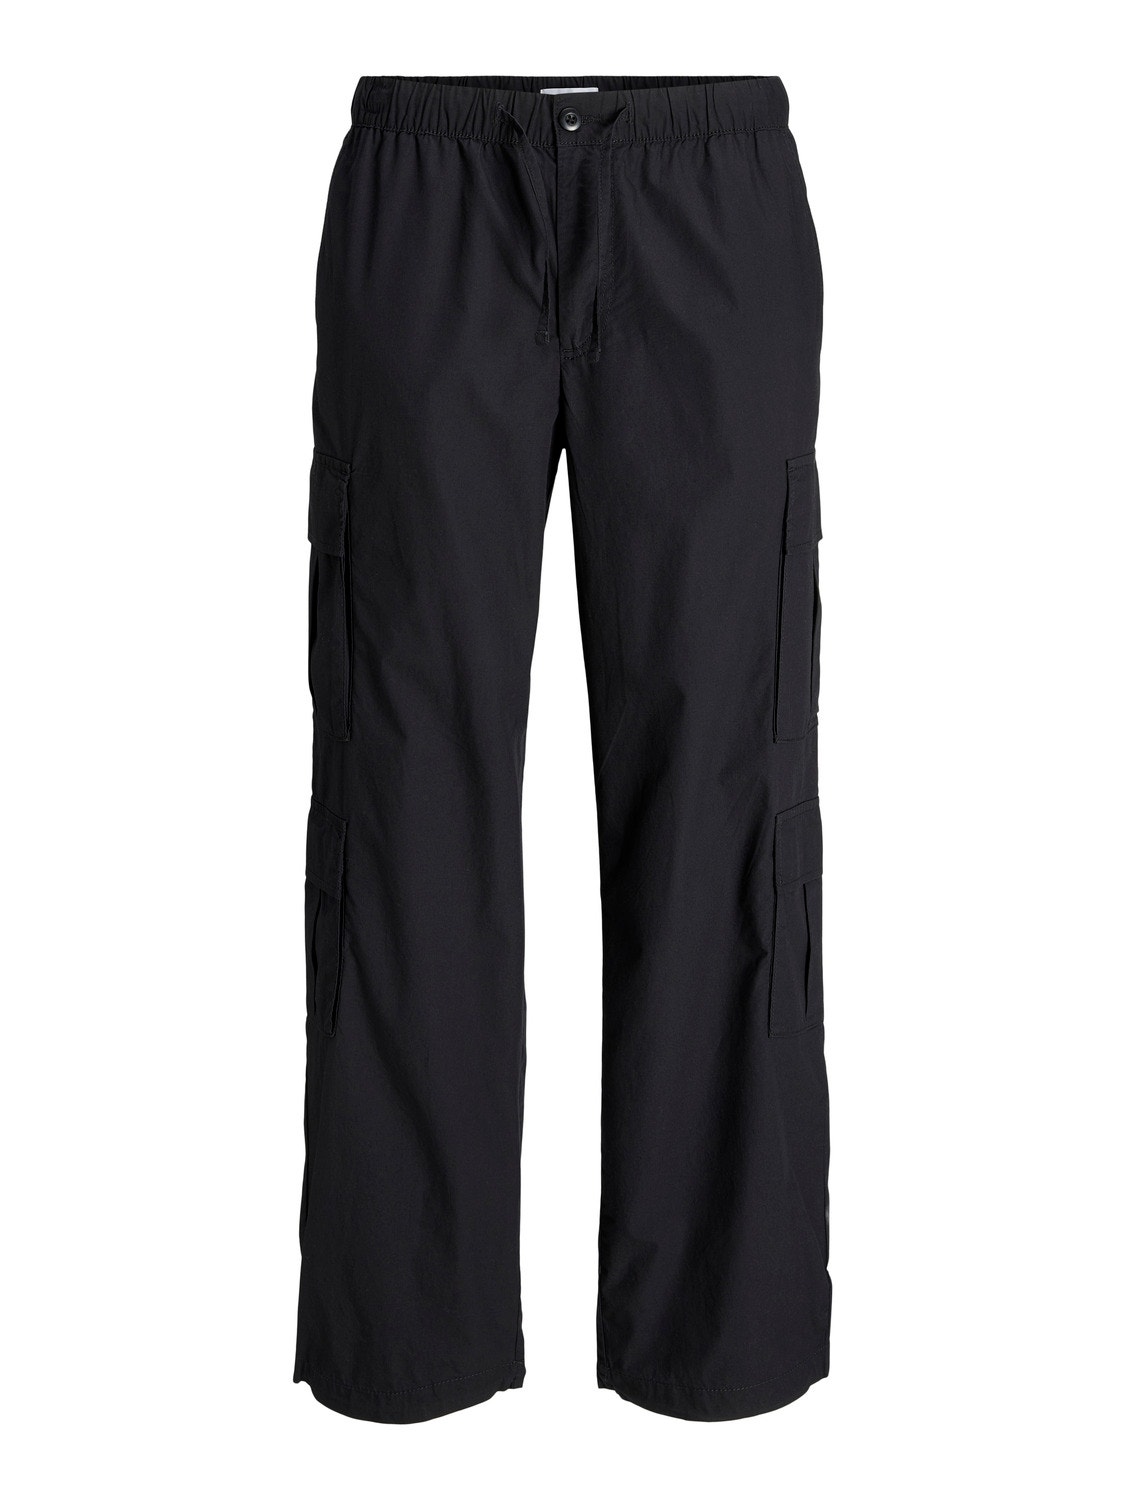 Jack & Jones Wide Fit Cargo trousers -Black - 12249002